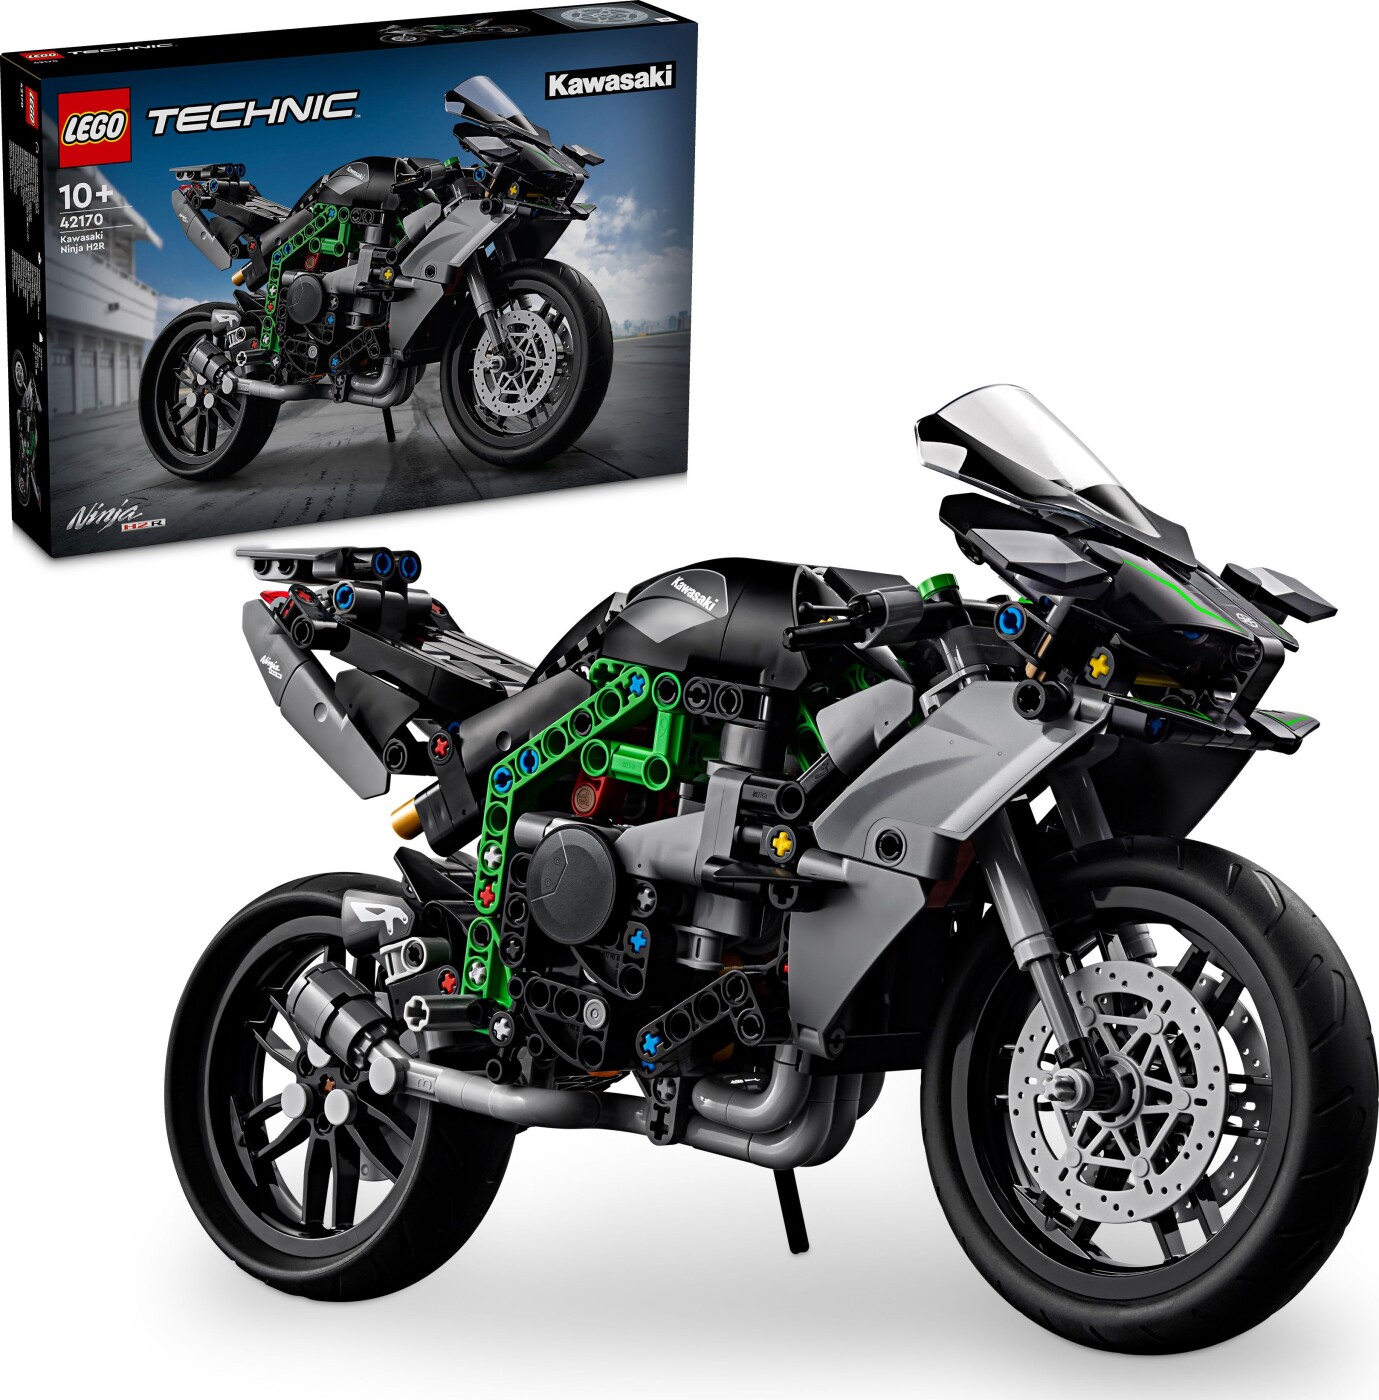 Billede af Lego Technic - Kawasaki Ninja H2r Motorcykel - 42170